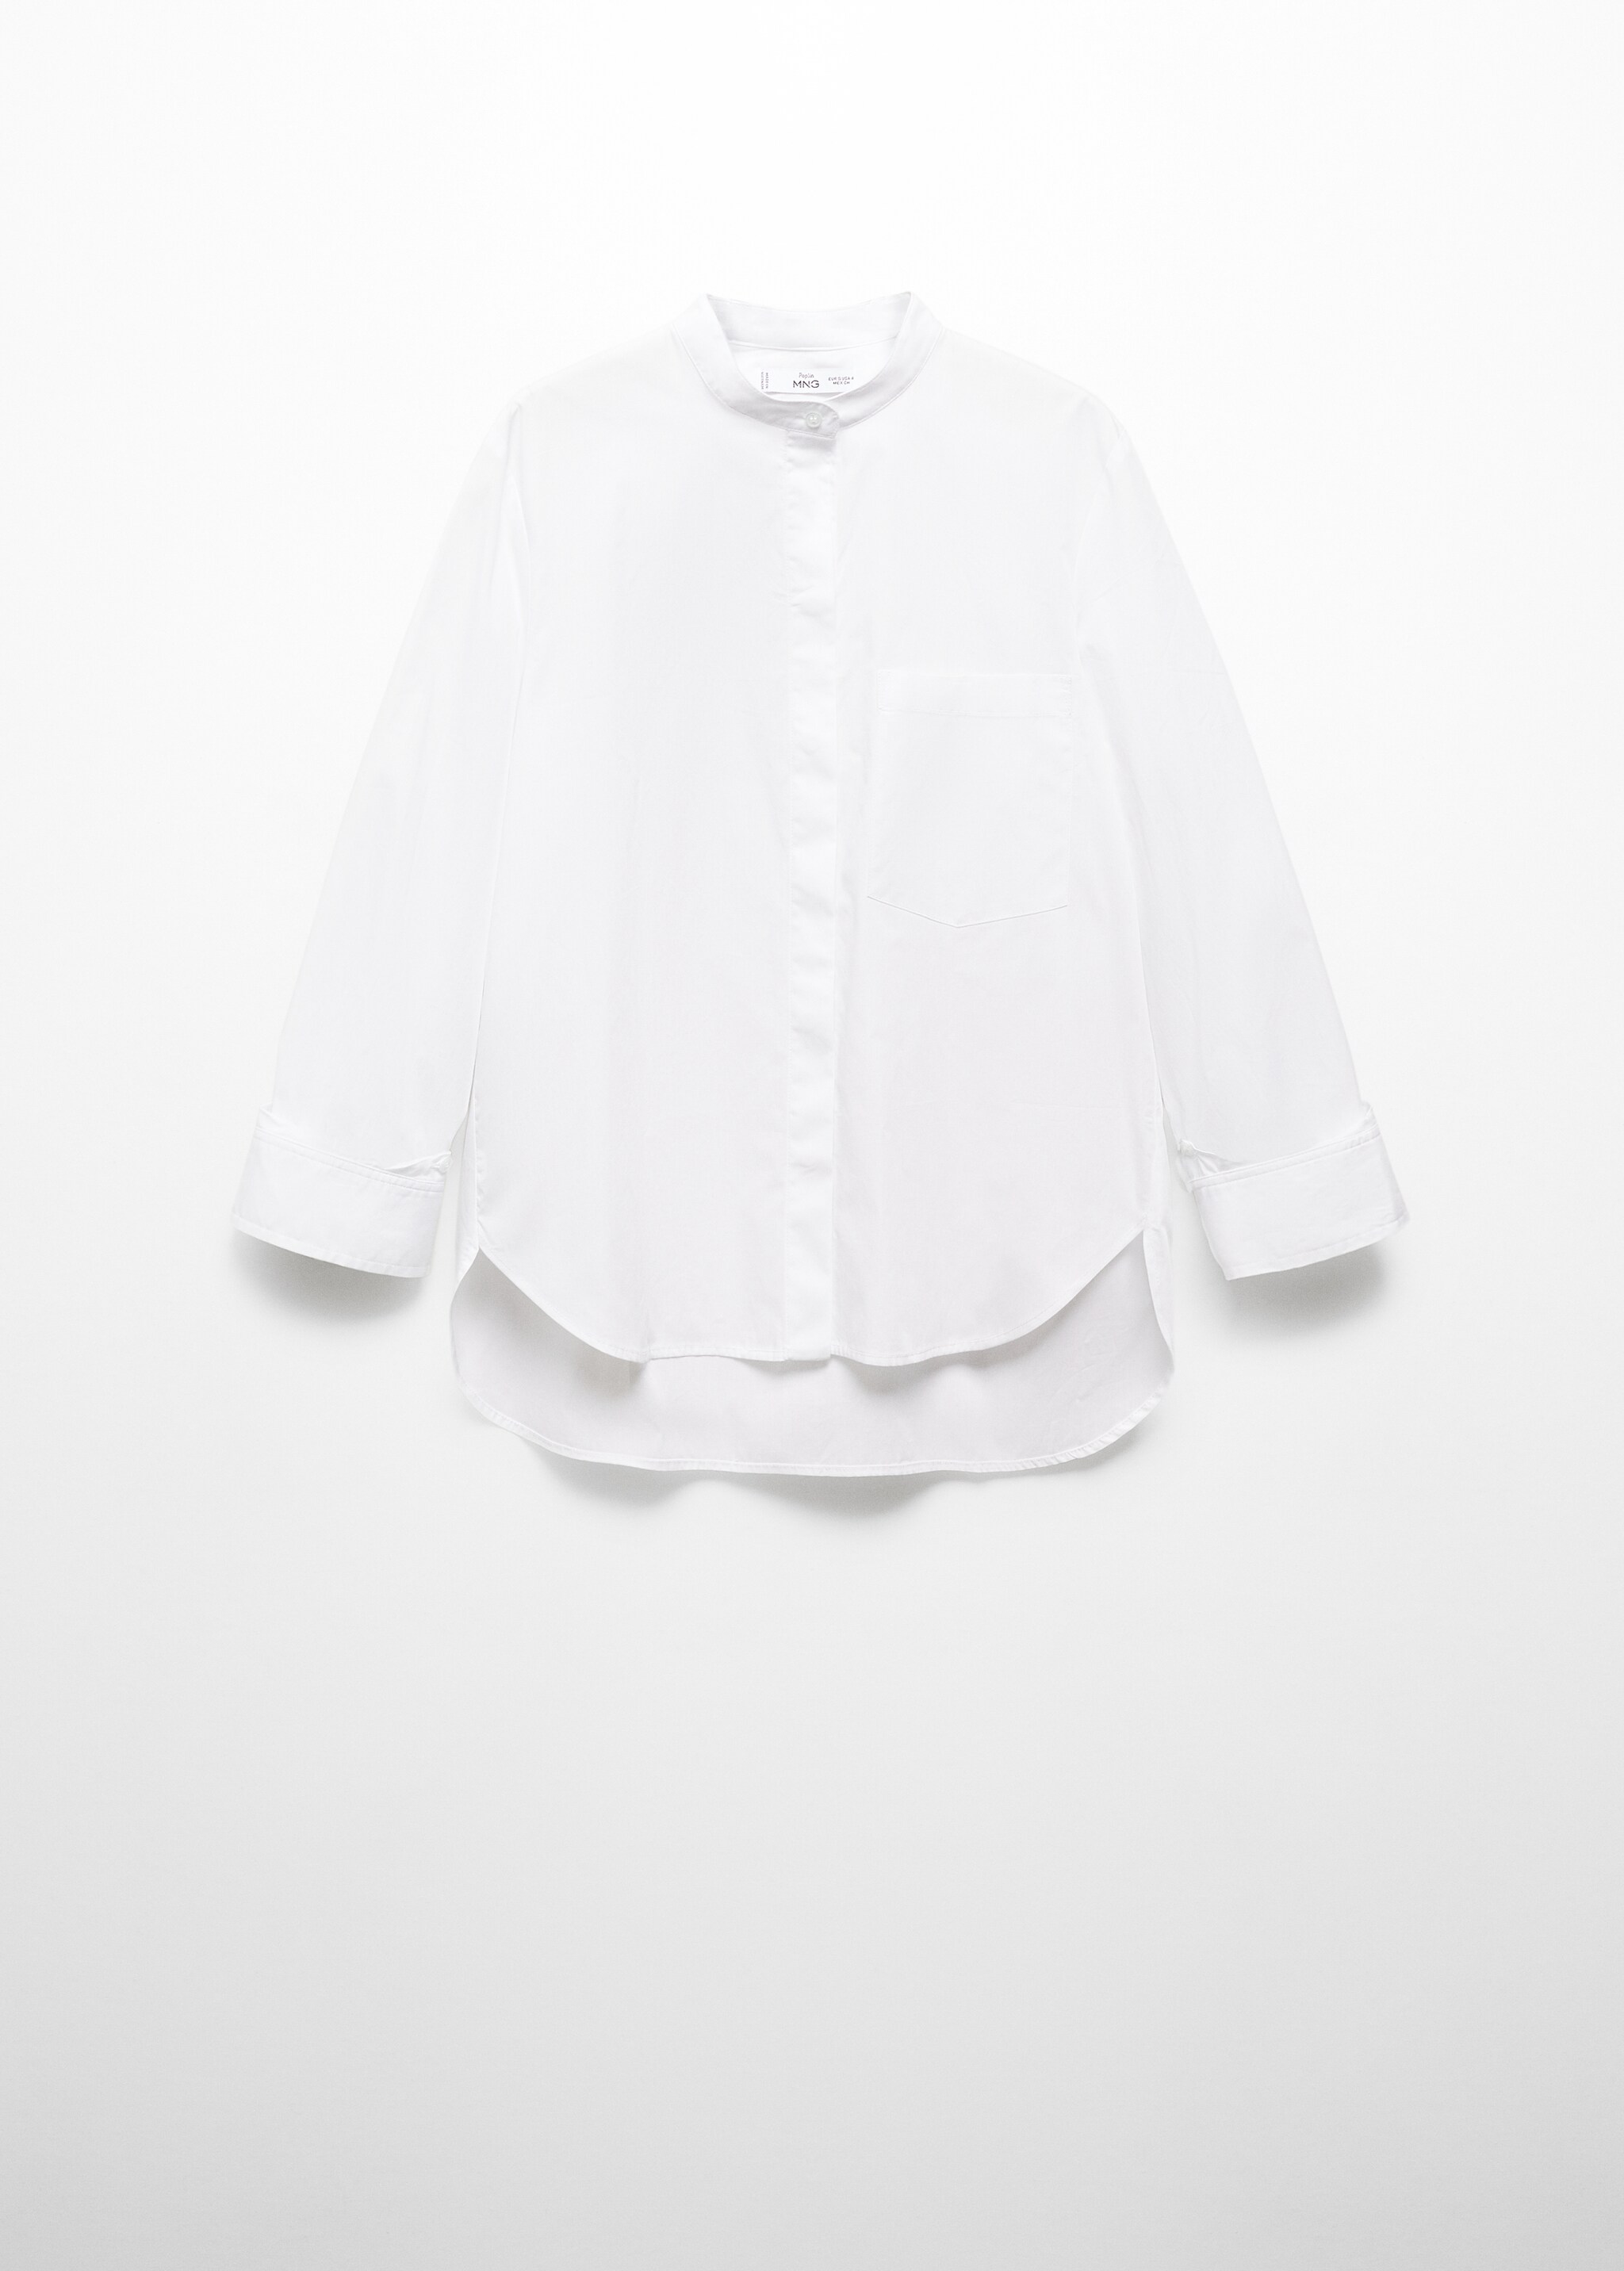 Camisa algodón botones - Artículo sin modelo